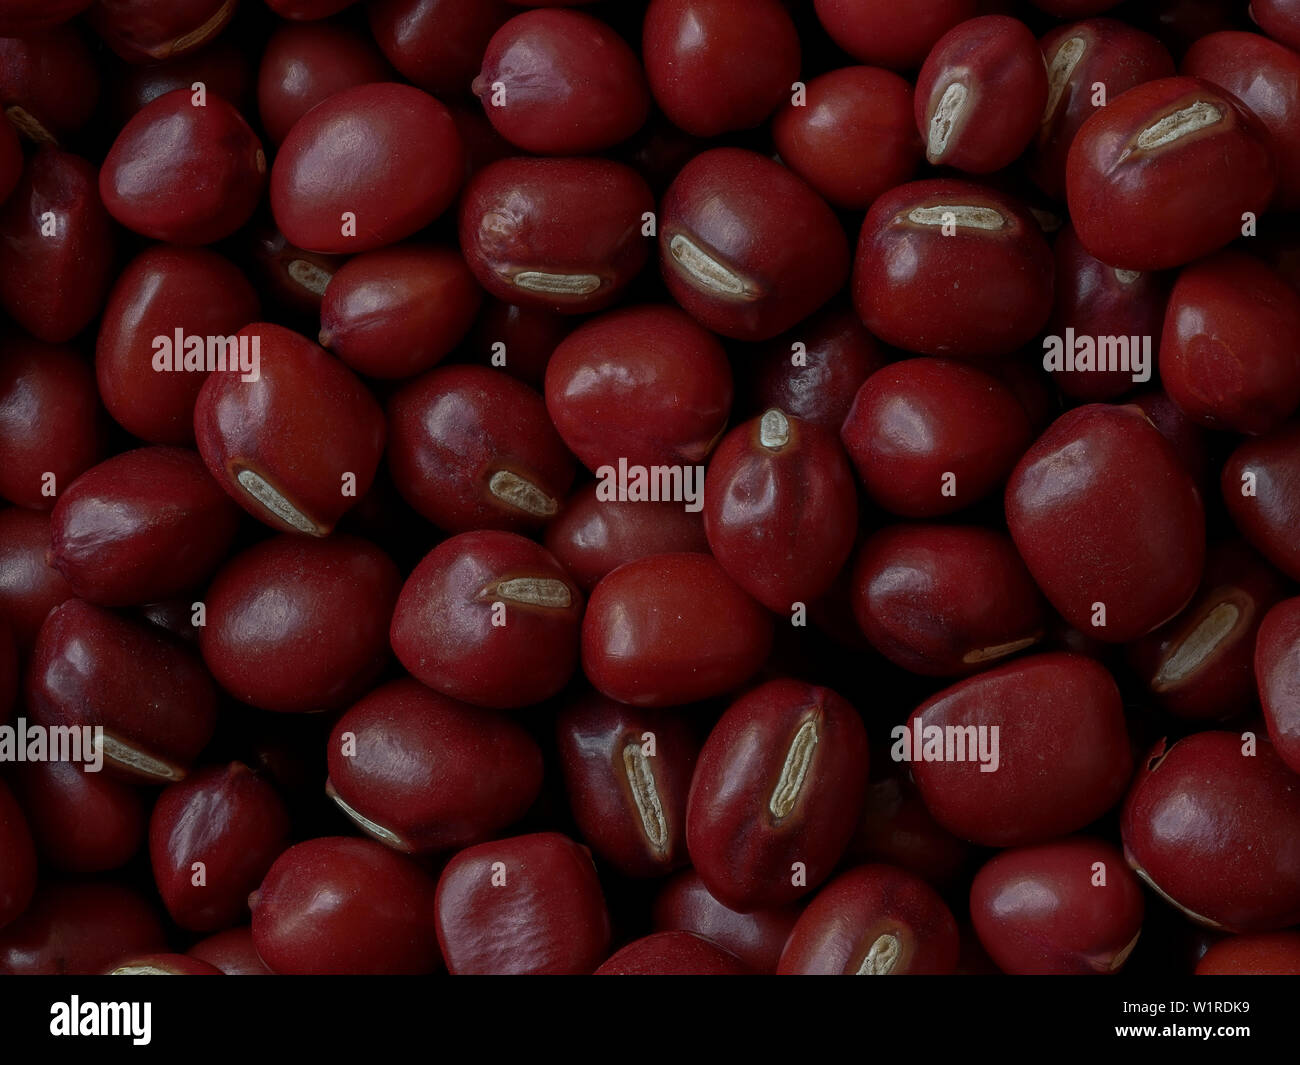 Close-up of Adzuki Beans, Vigna angularis, Food Background Stock Photo